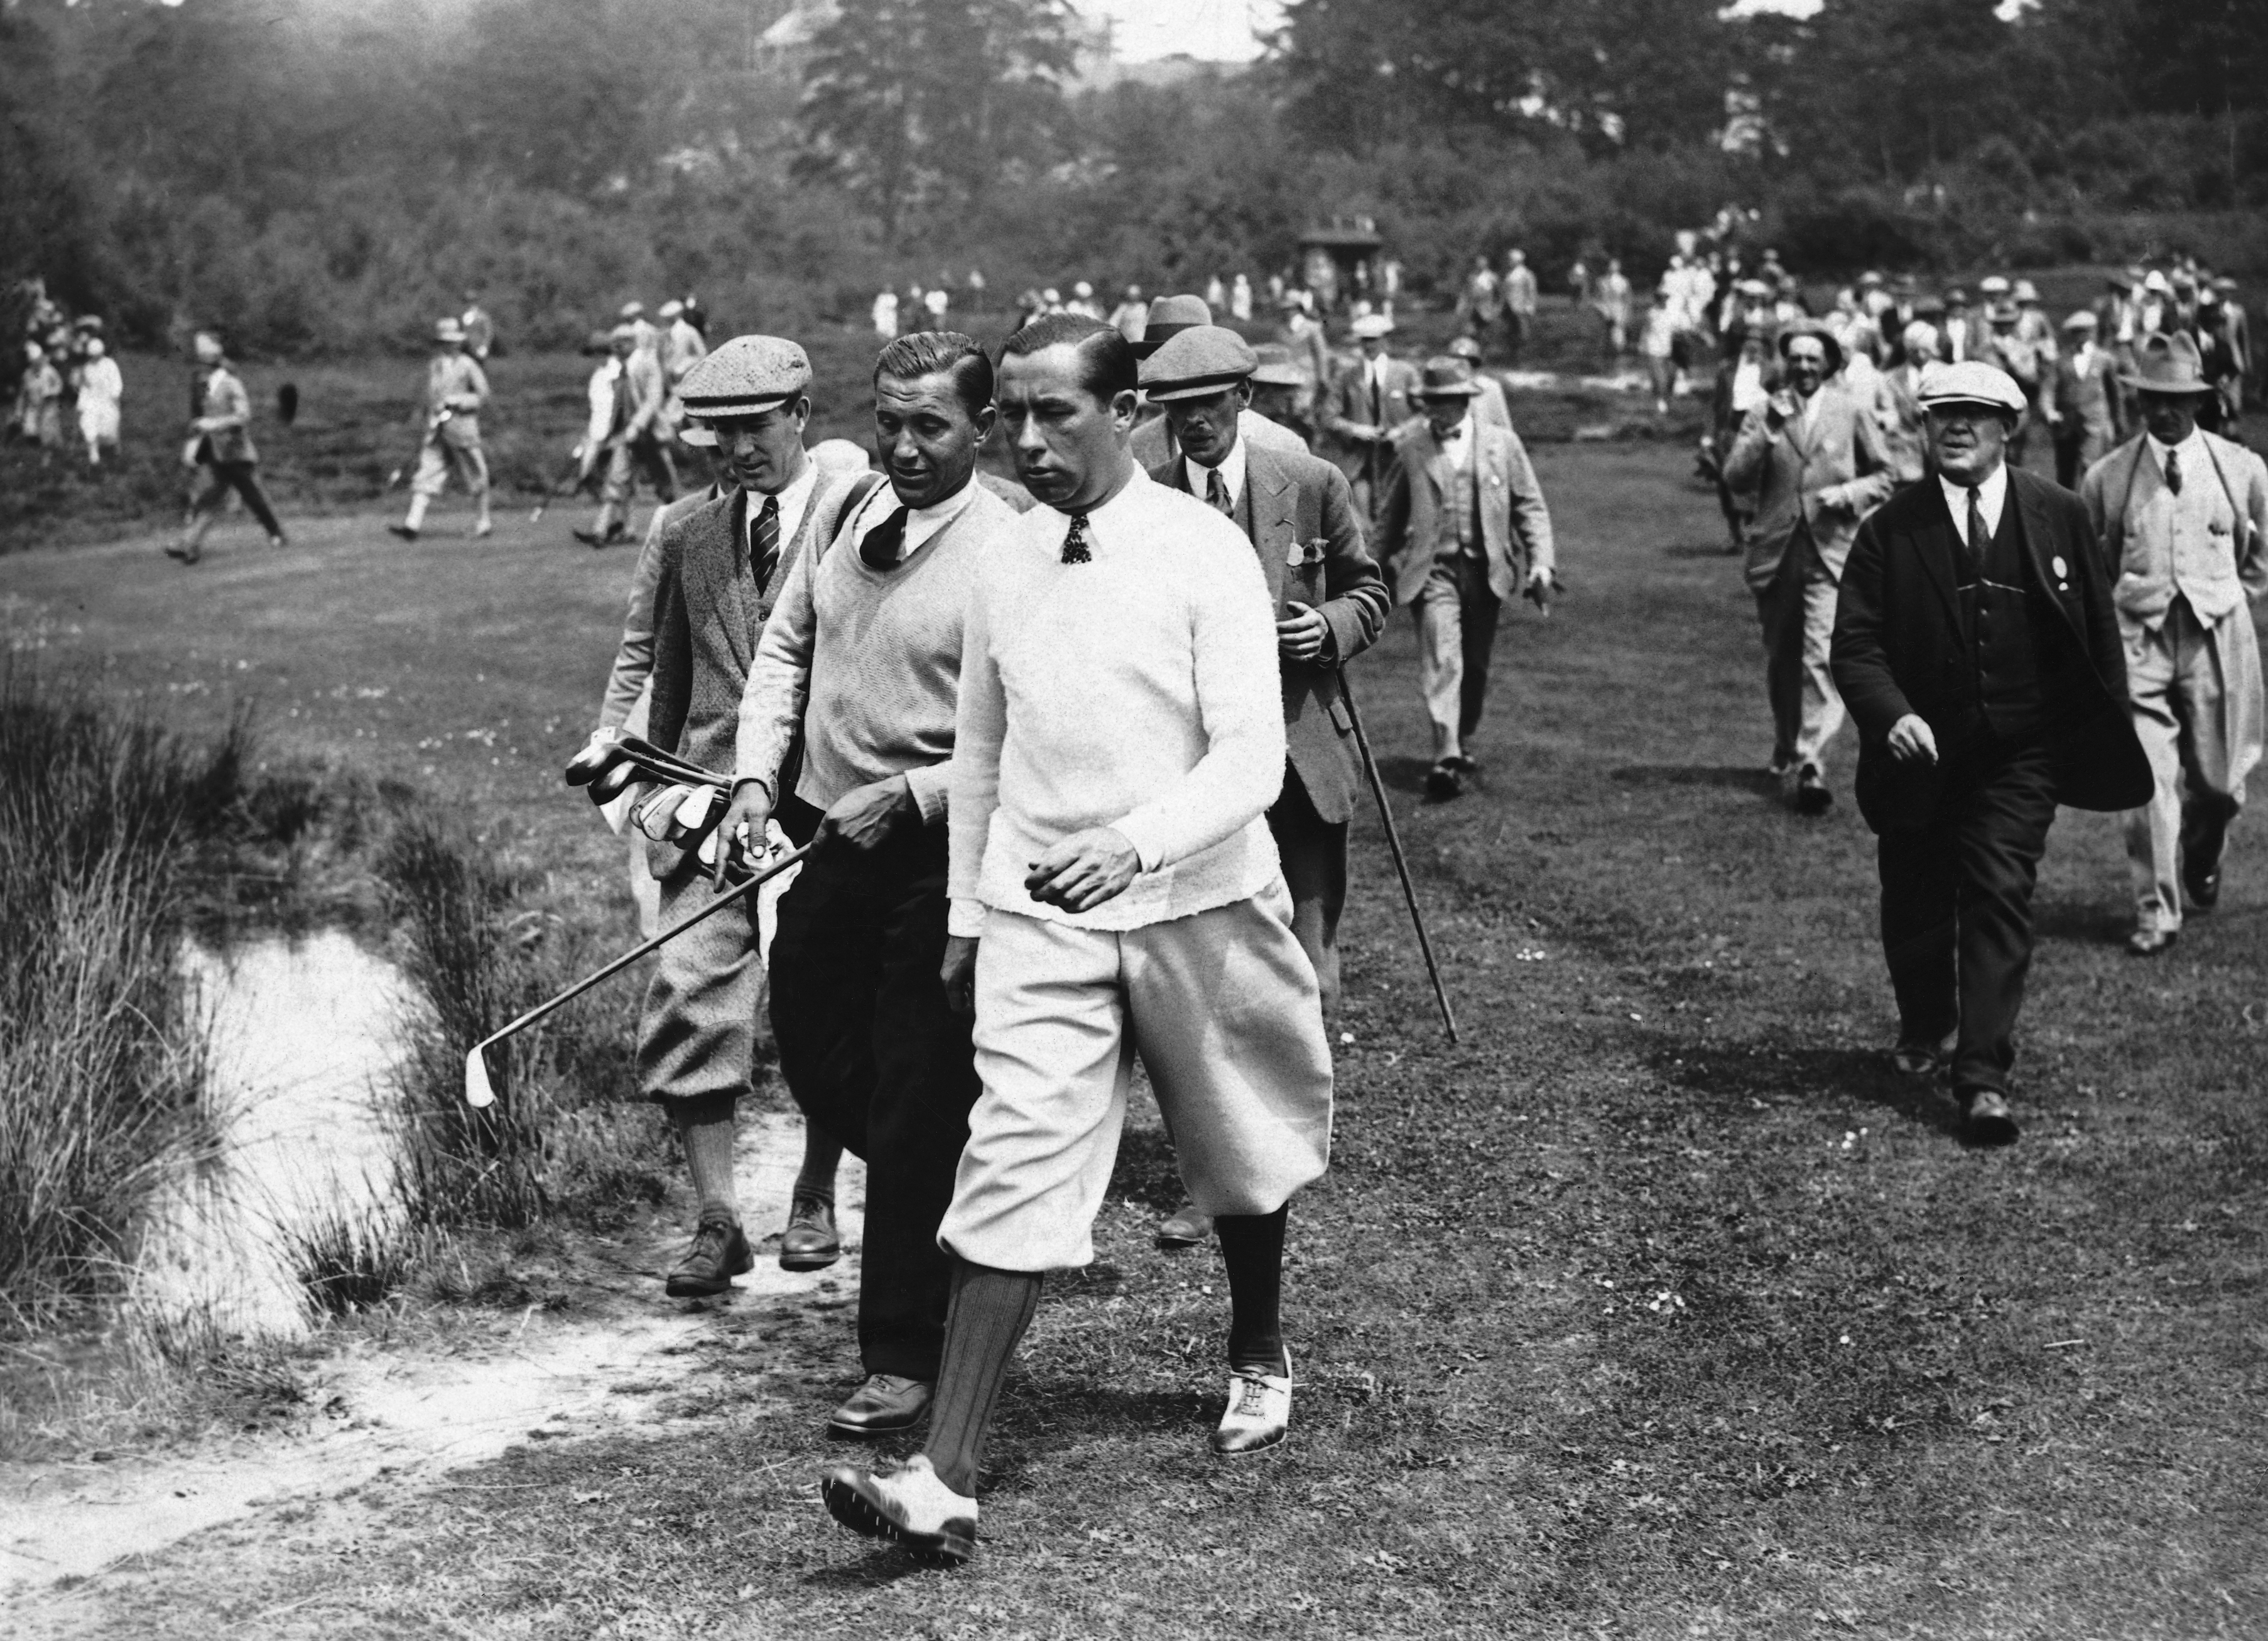 Walter Hagen pictured amongst spectators walking a fairway